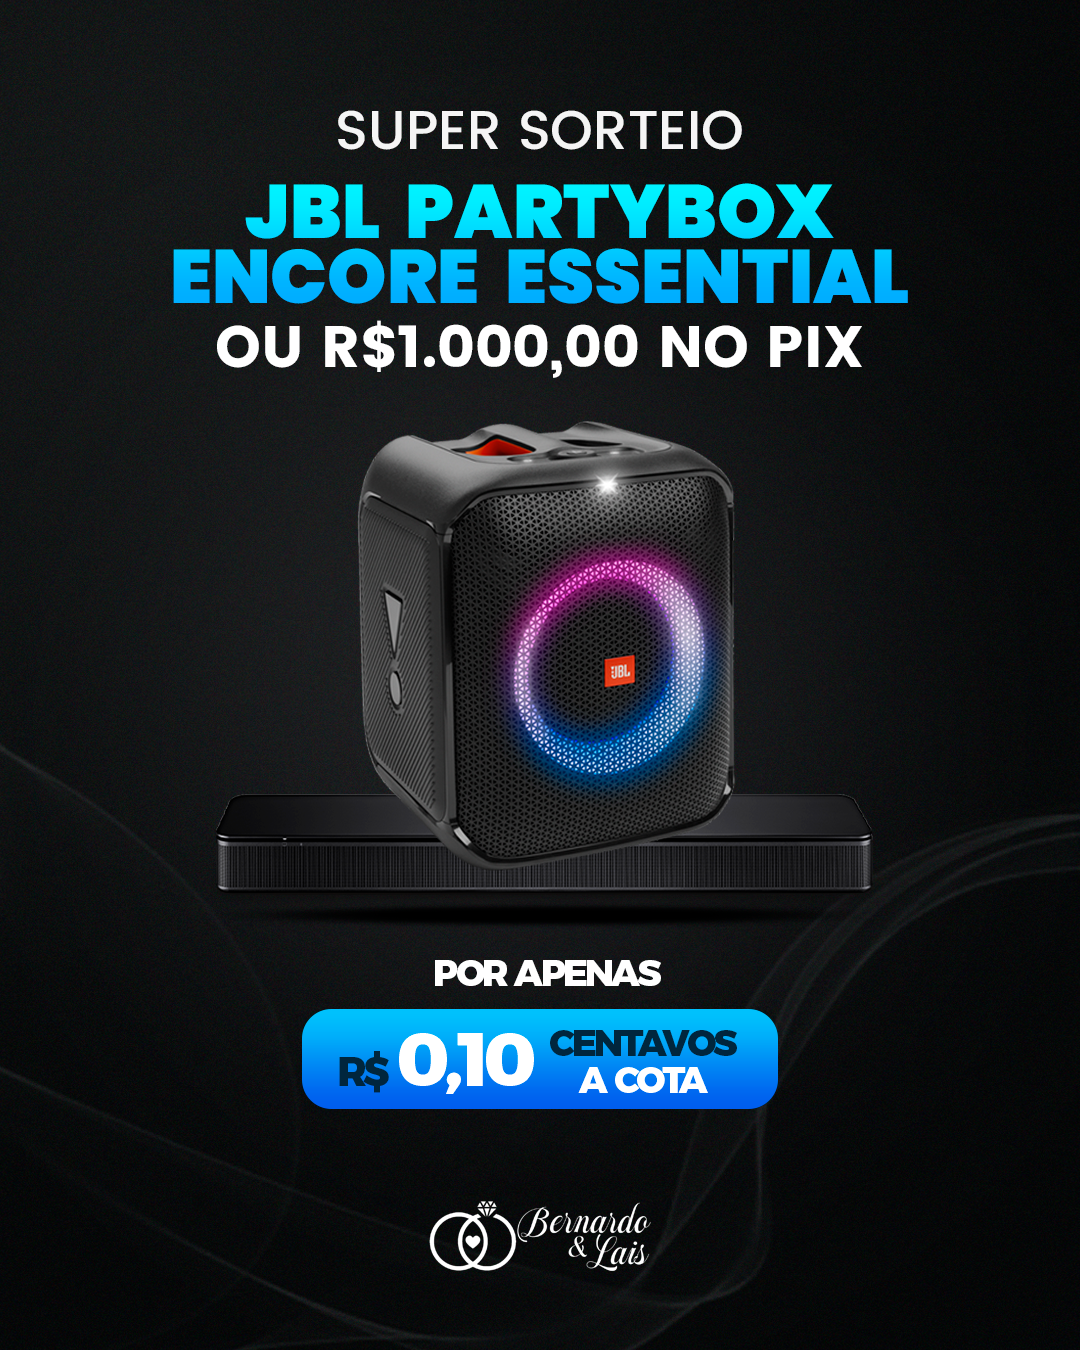 JBL PARTYBOX ENCORE – POR APENAS 0,10 CENTAVOS A COTA